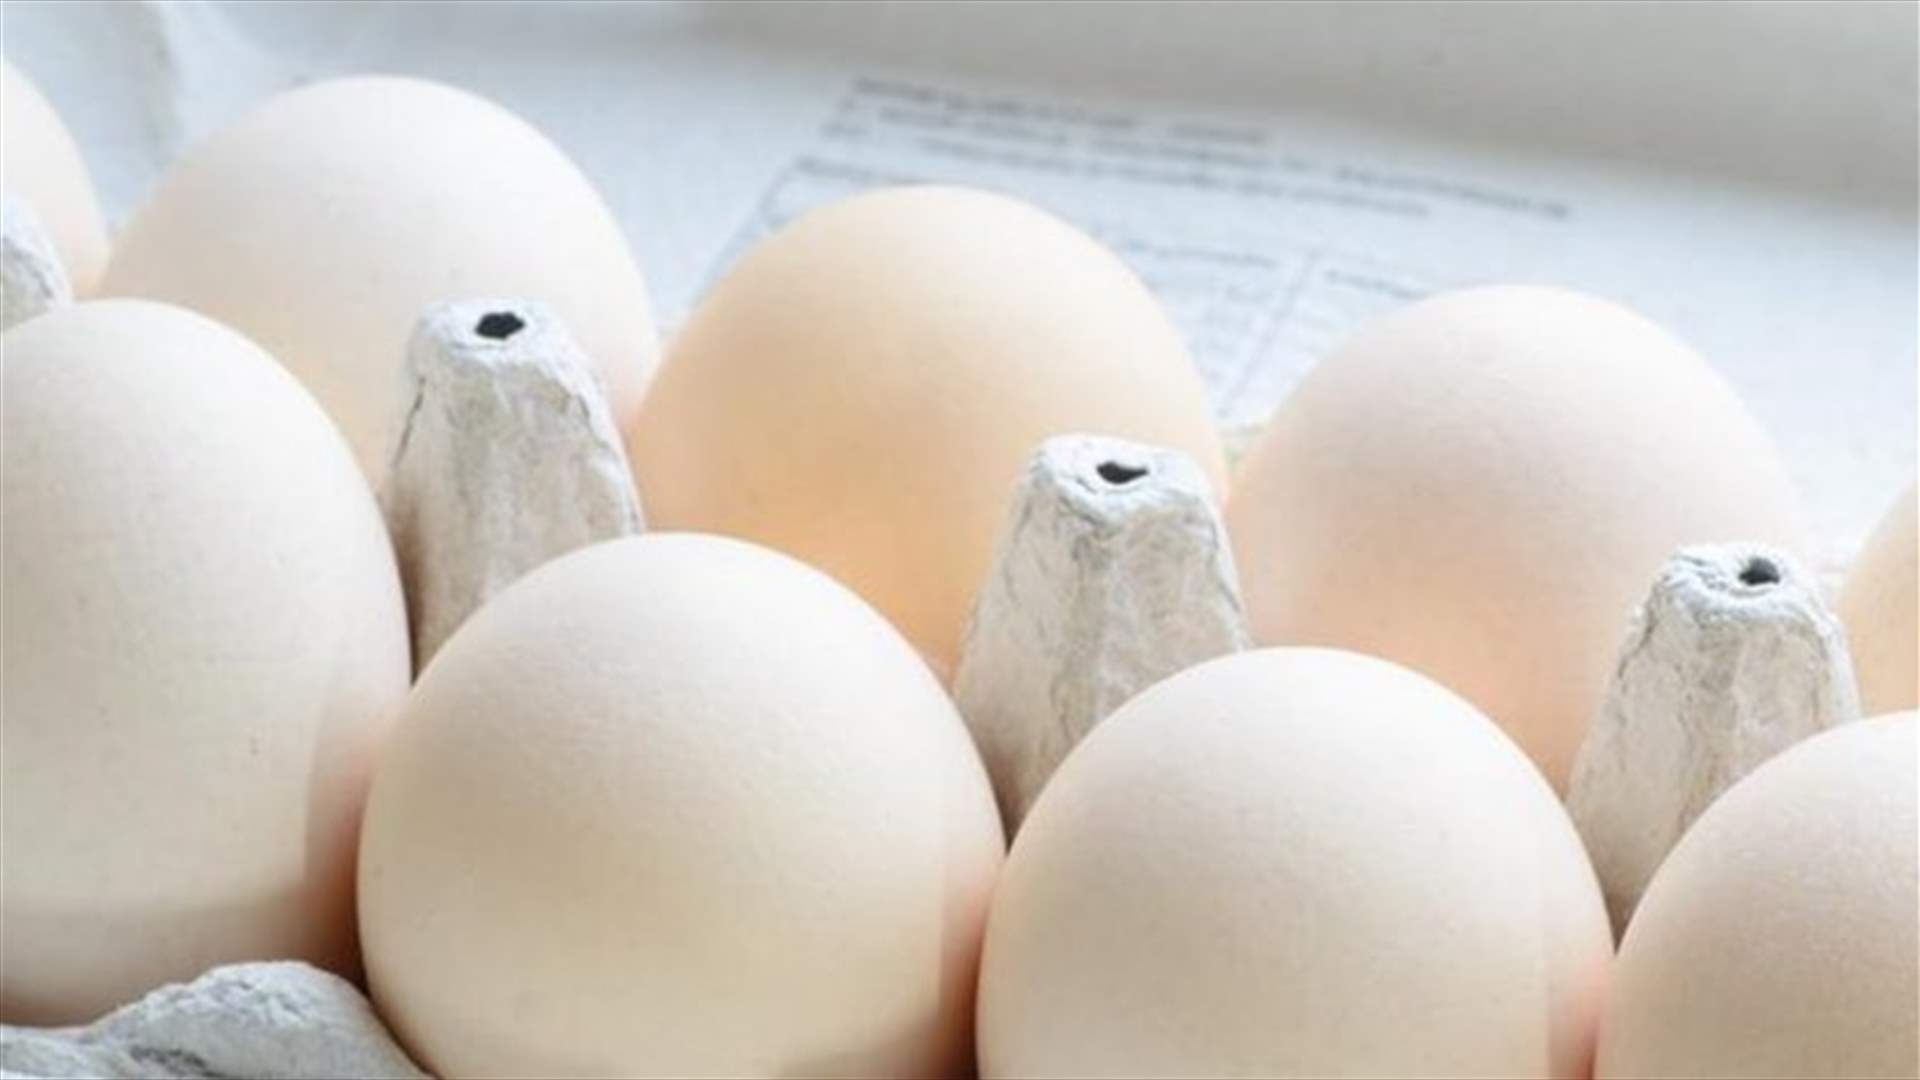 بالفيديو: كيف تميّزون بين البيض الطازج والبيض غير الصالح للأكل؟